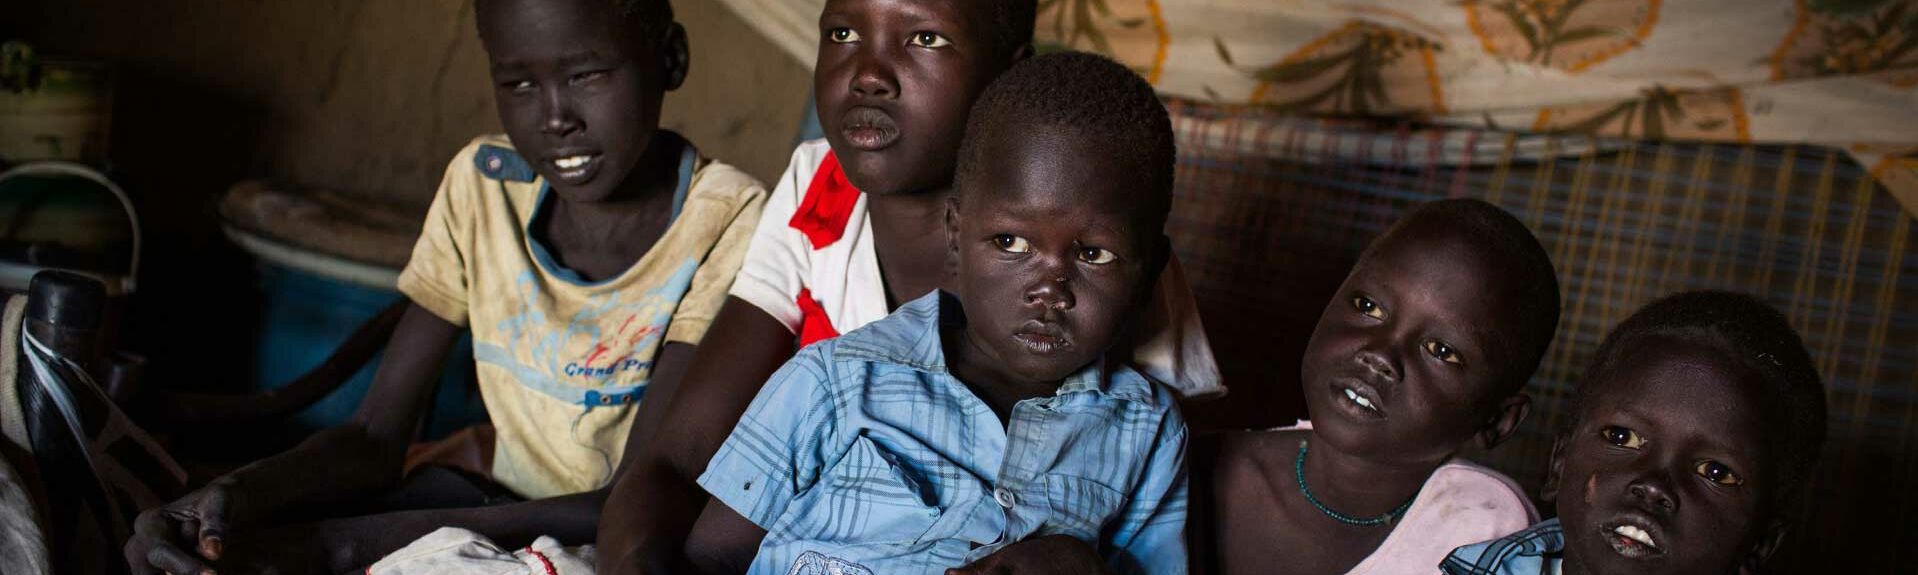 Lina aus dem Südsudan